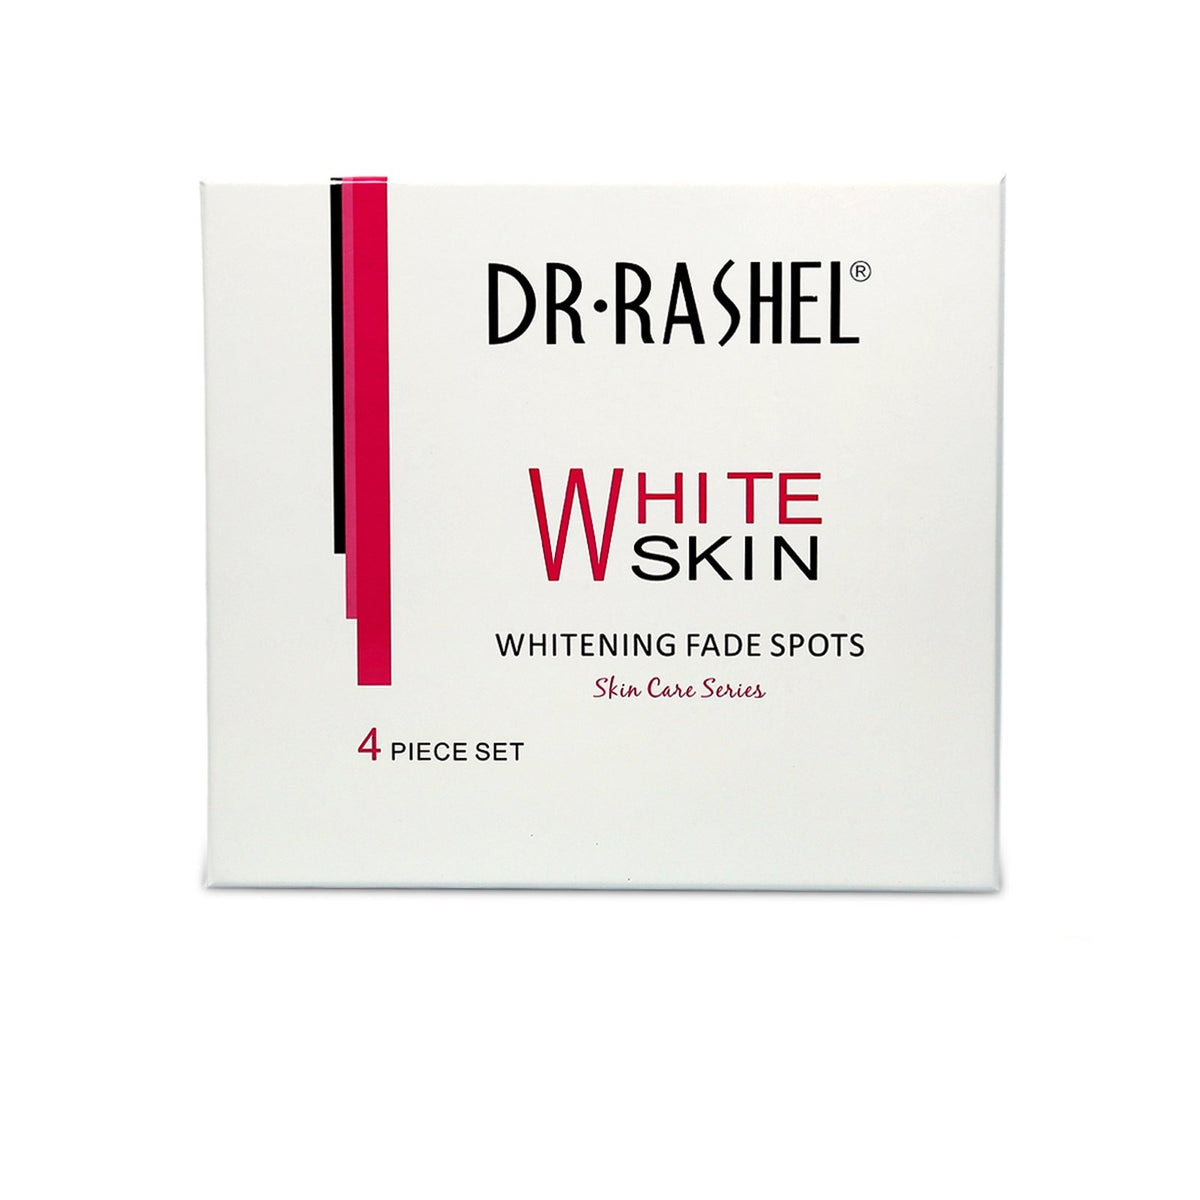 Dr Rashel Whitening Fade Spot Skin Care Series 4 Piece Set freeshipping - lasertag.pk